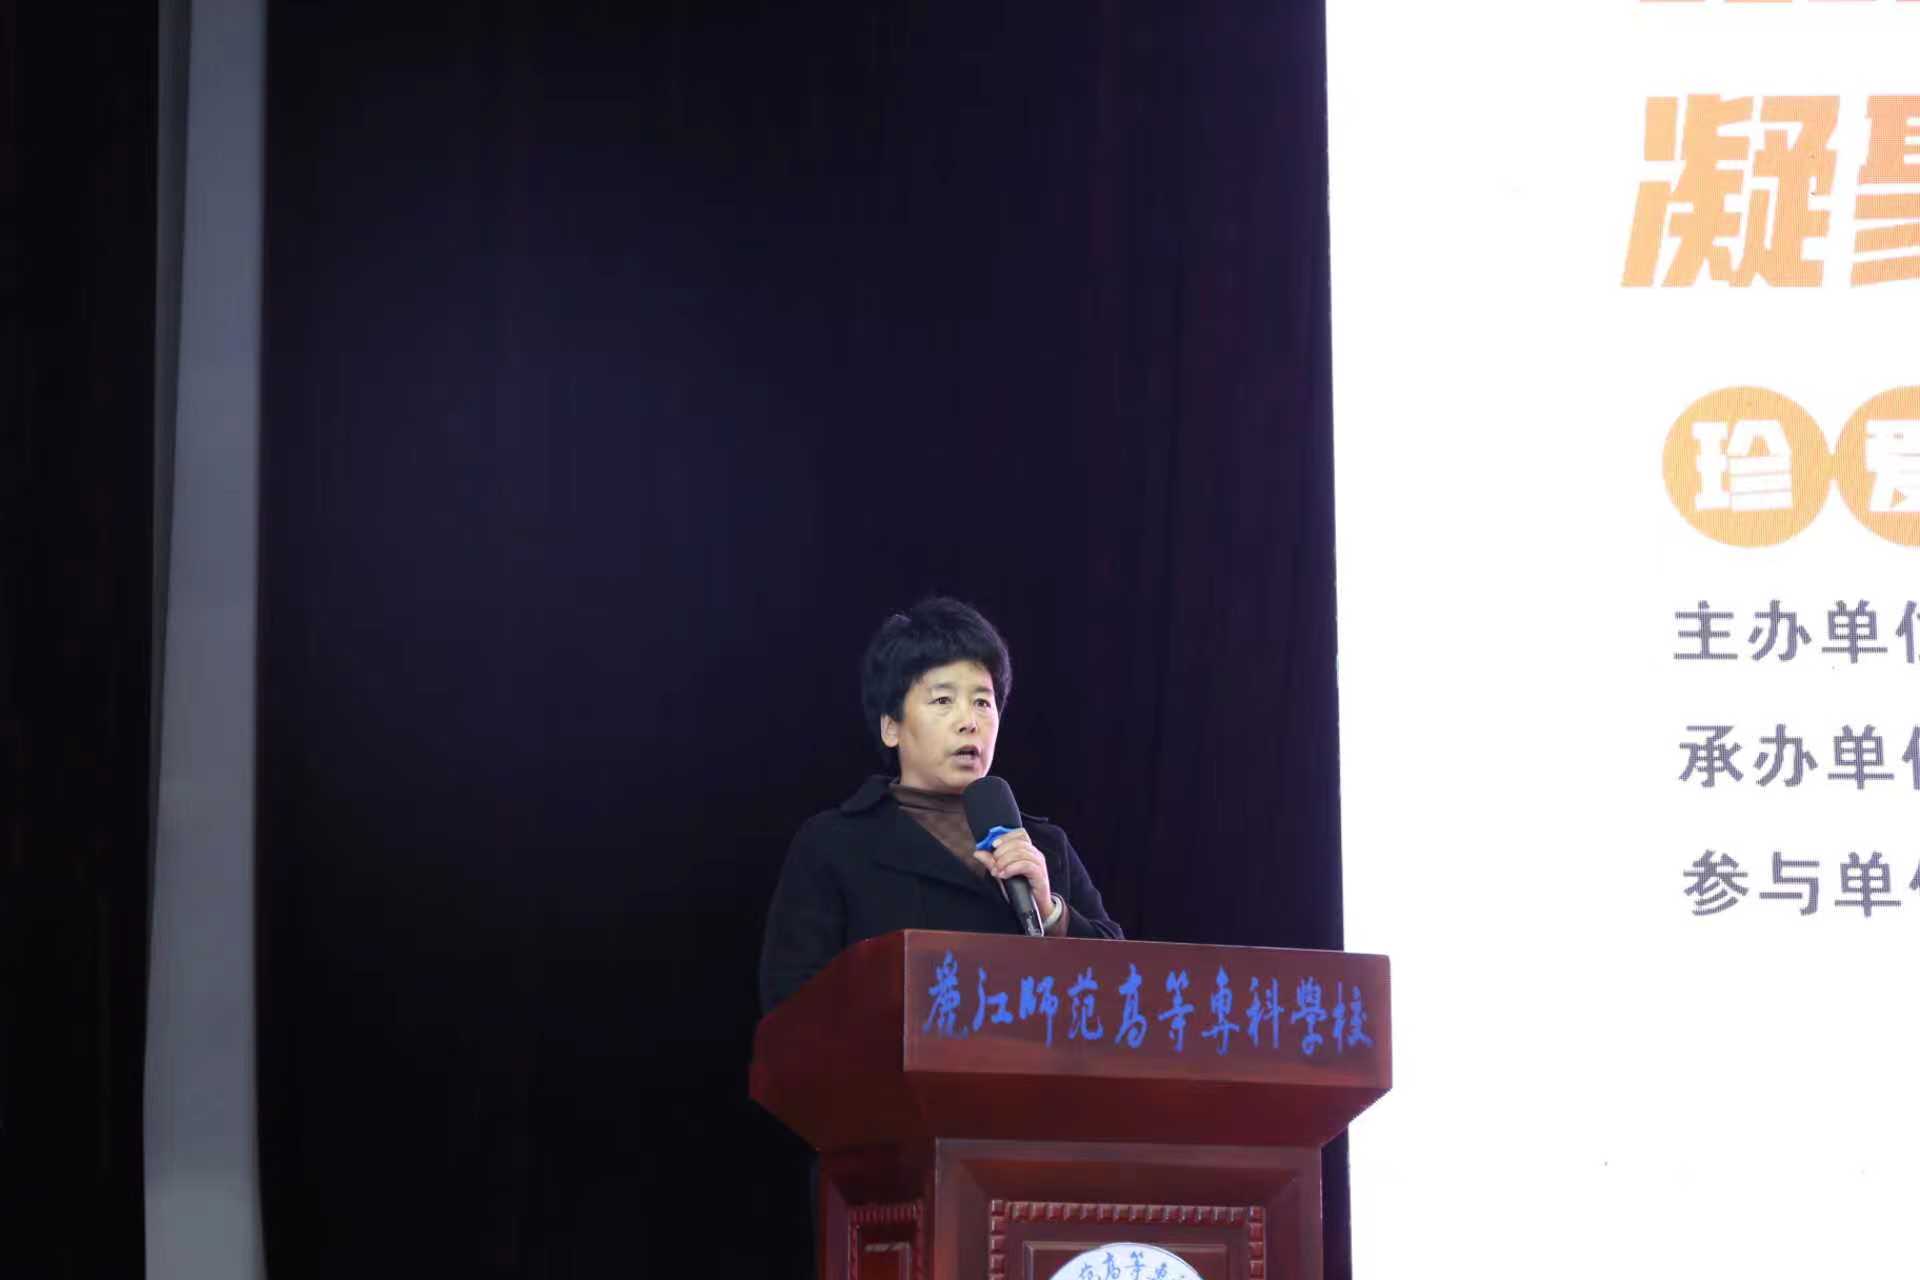 丽江市举办第36个“世界艾滋病日”宣传活动，呼吁凝聚社会力量共抗艾滋病 (1).jpg